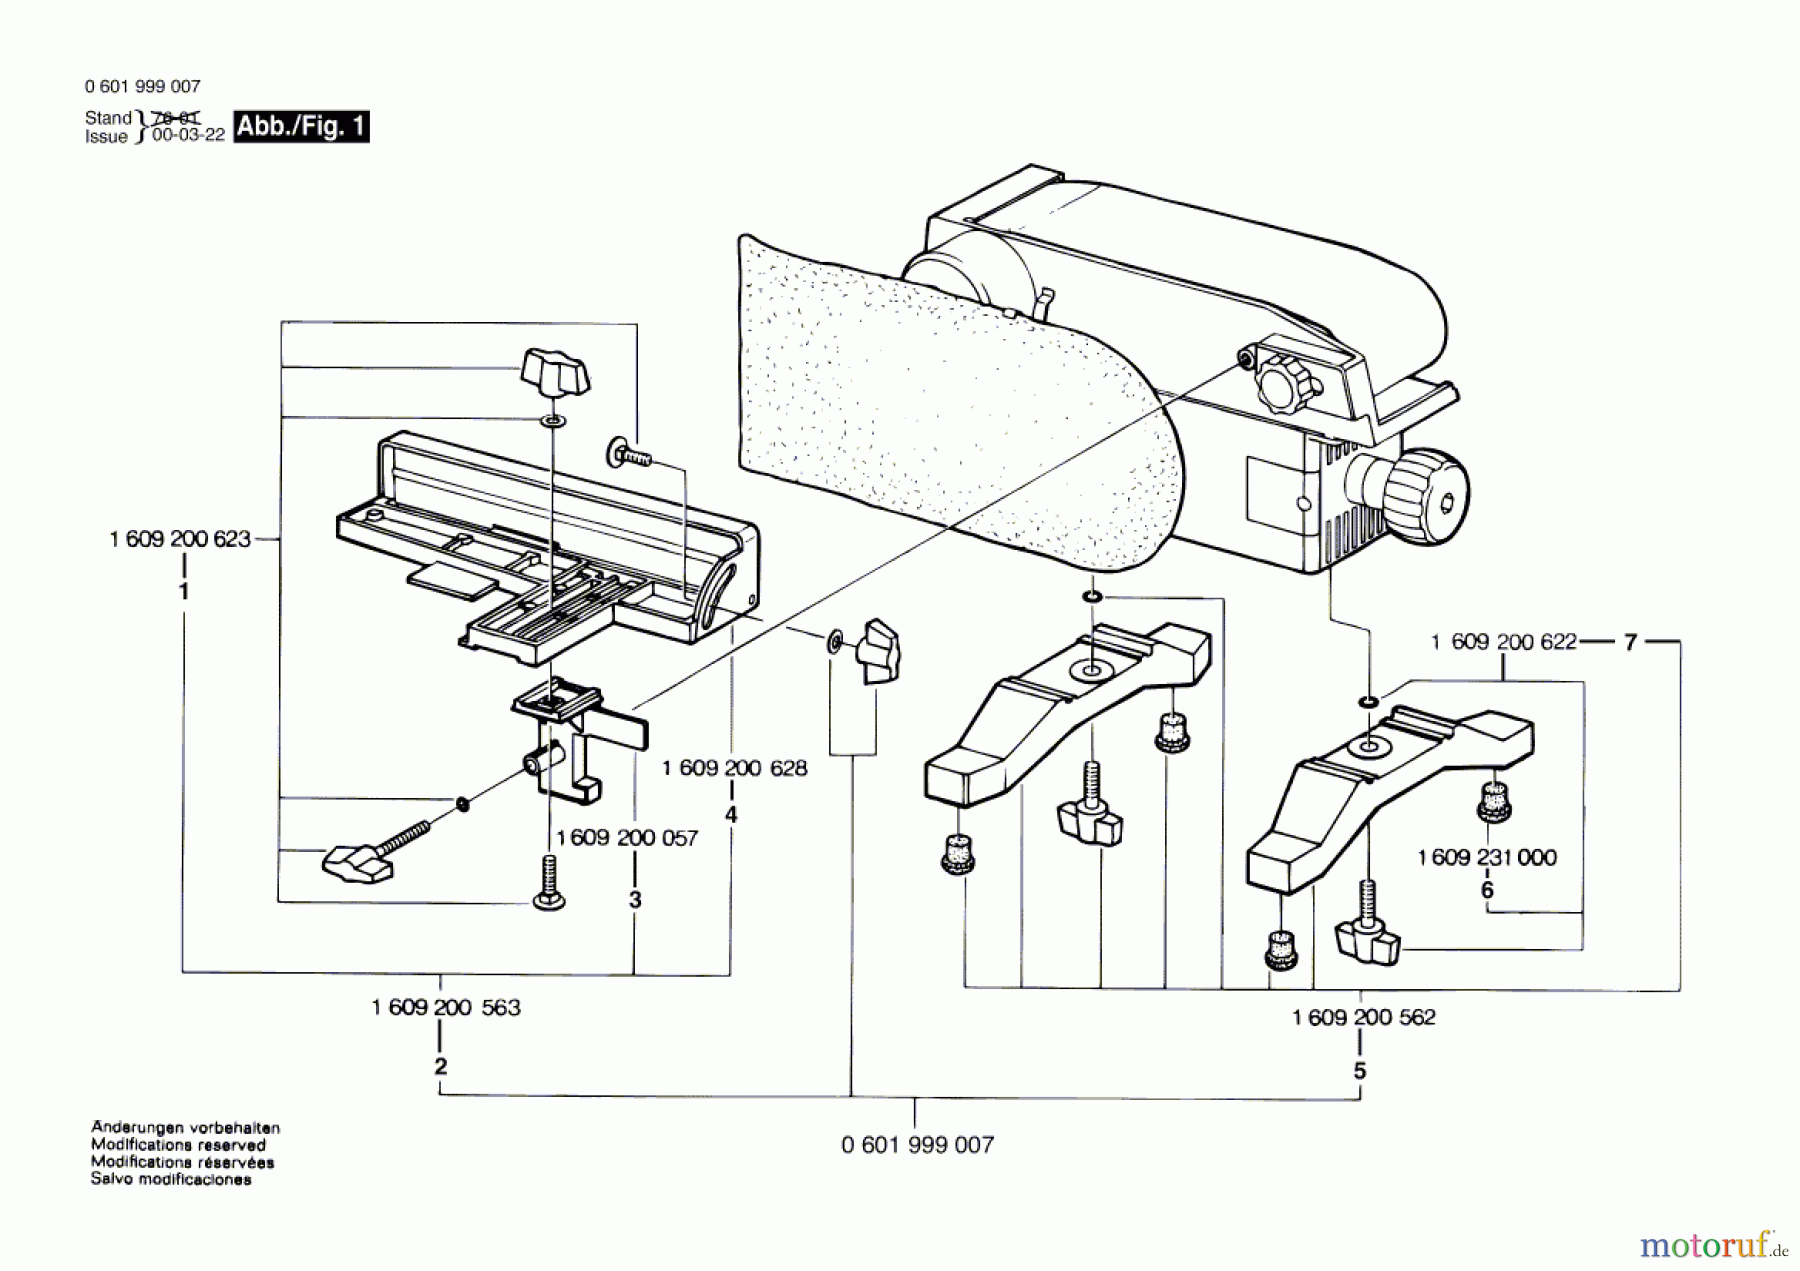  Bosch Werkzeug Teilesatz ---- Seite 1